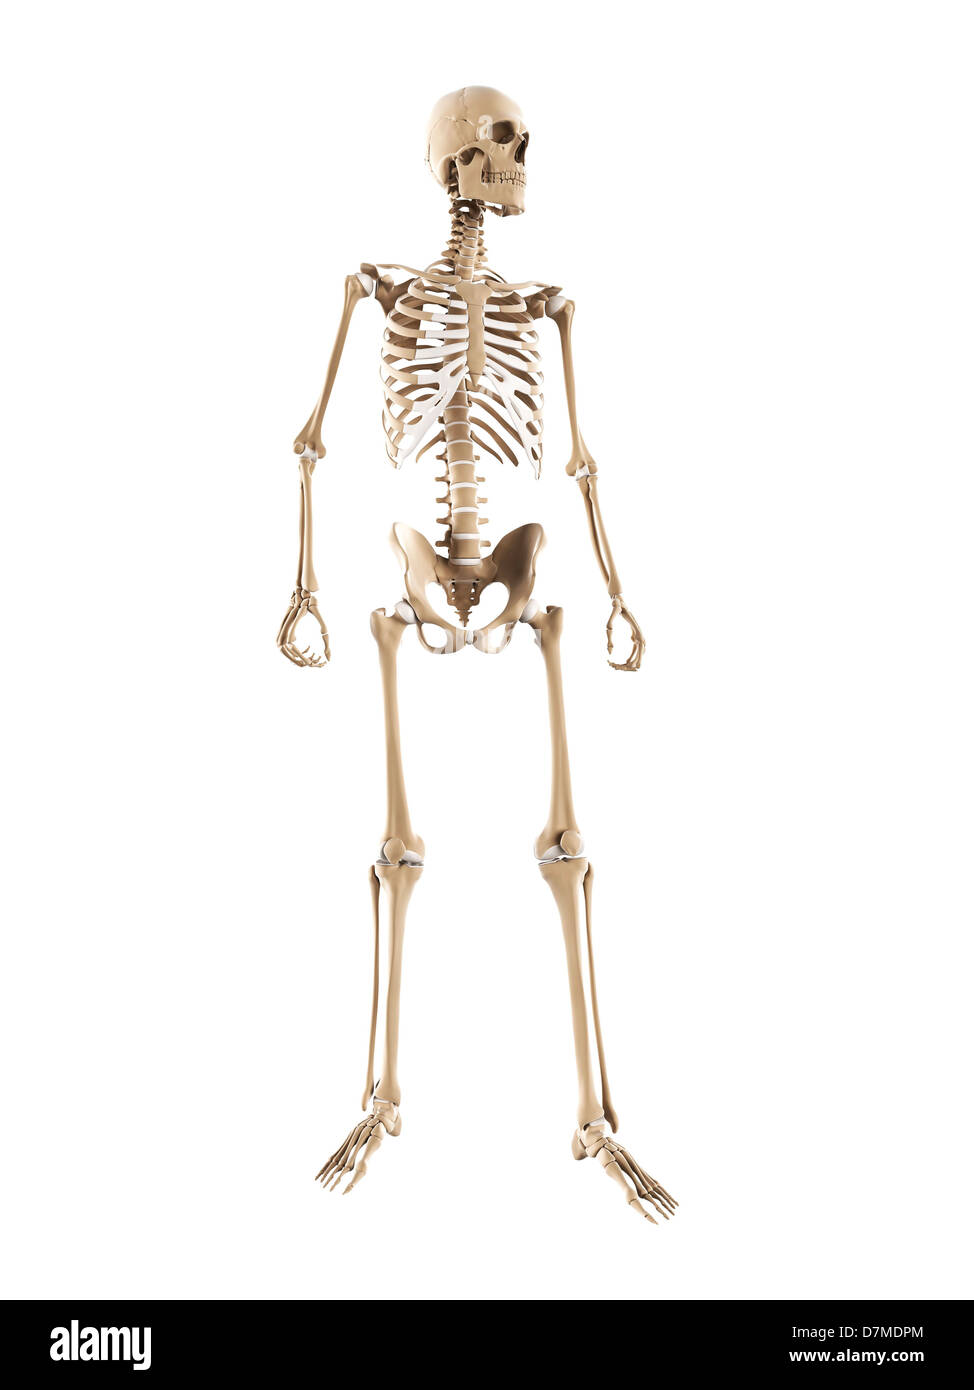 Skeleton, artwork Stock Photo